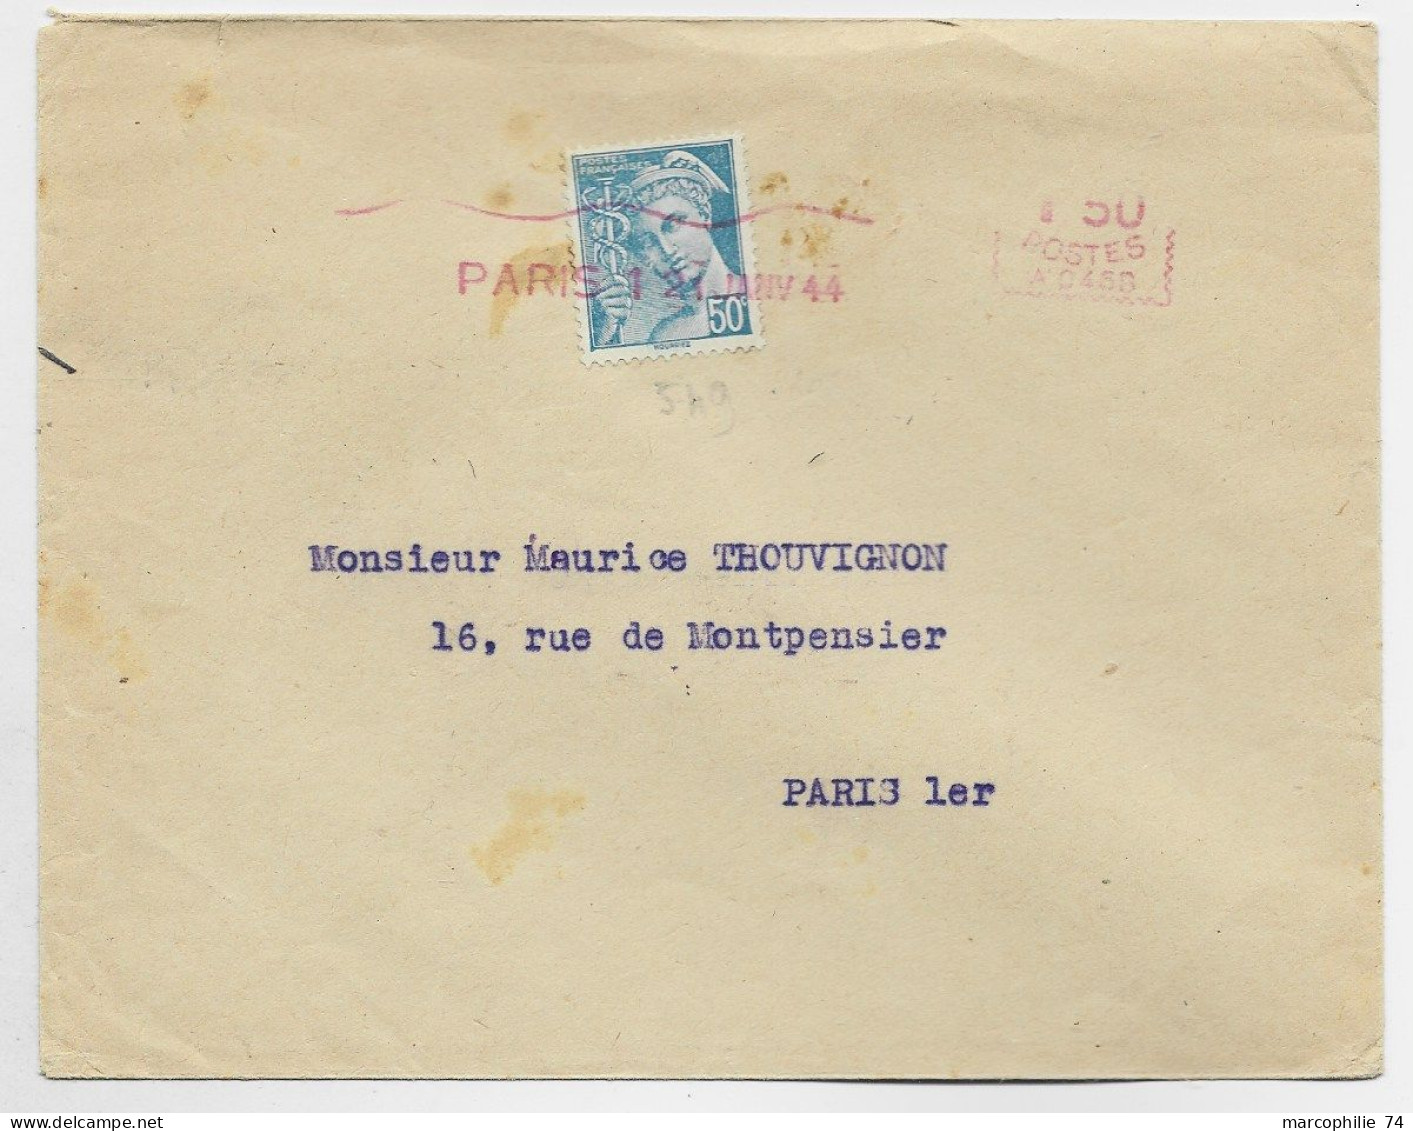 FRANCE MERCURE 50C N°549 OBL EMA 1FR50 A 456 PARIS 1 21 JANV 1944 AU TARIF - 1938-42 Mercurius